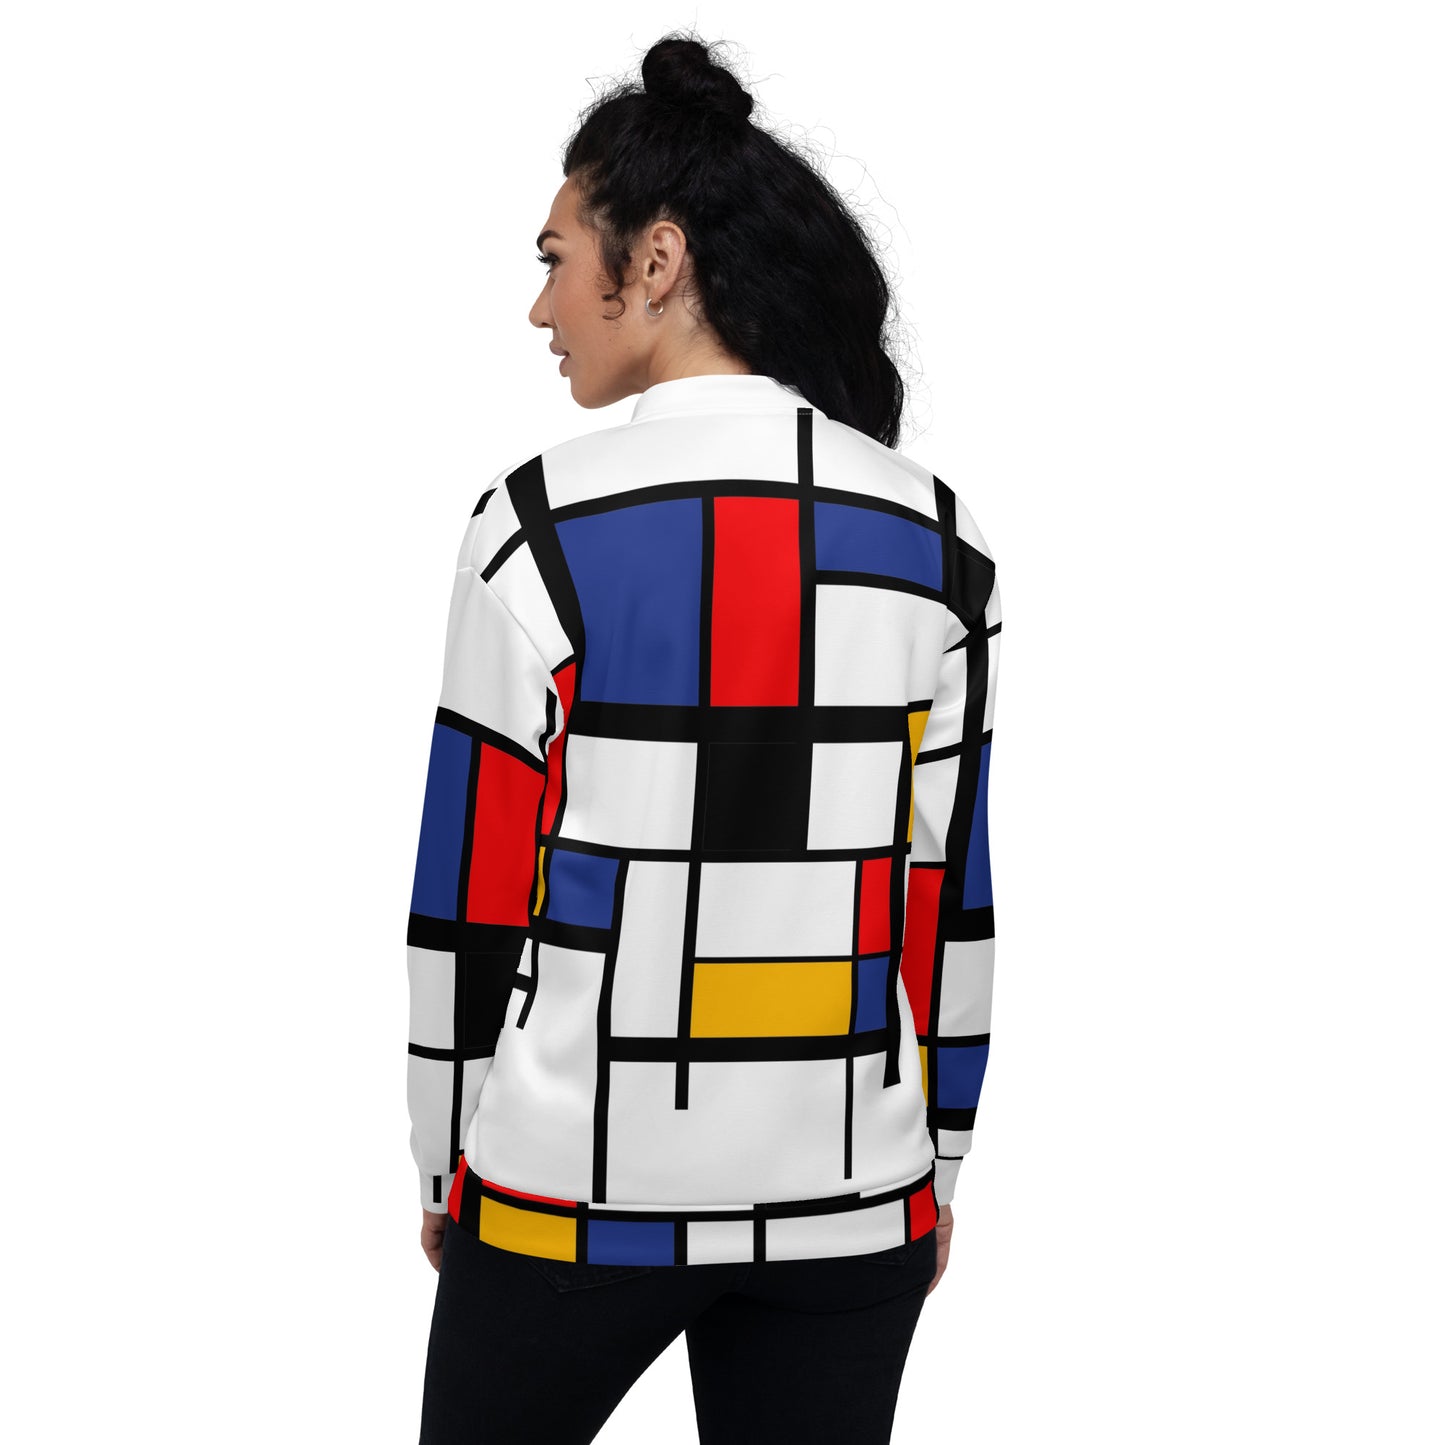 Unisex Bomber Jacket / Piet Mondrian Jacket / Art gift for him / Art gift for her